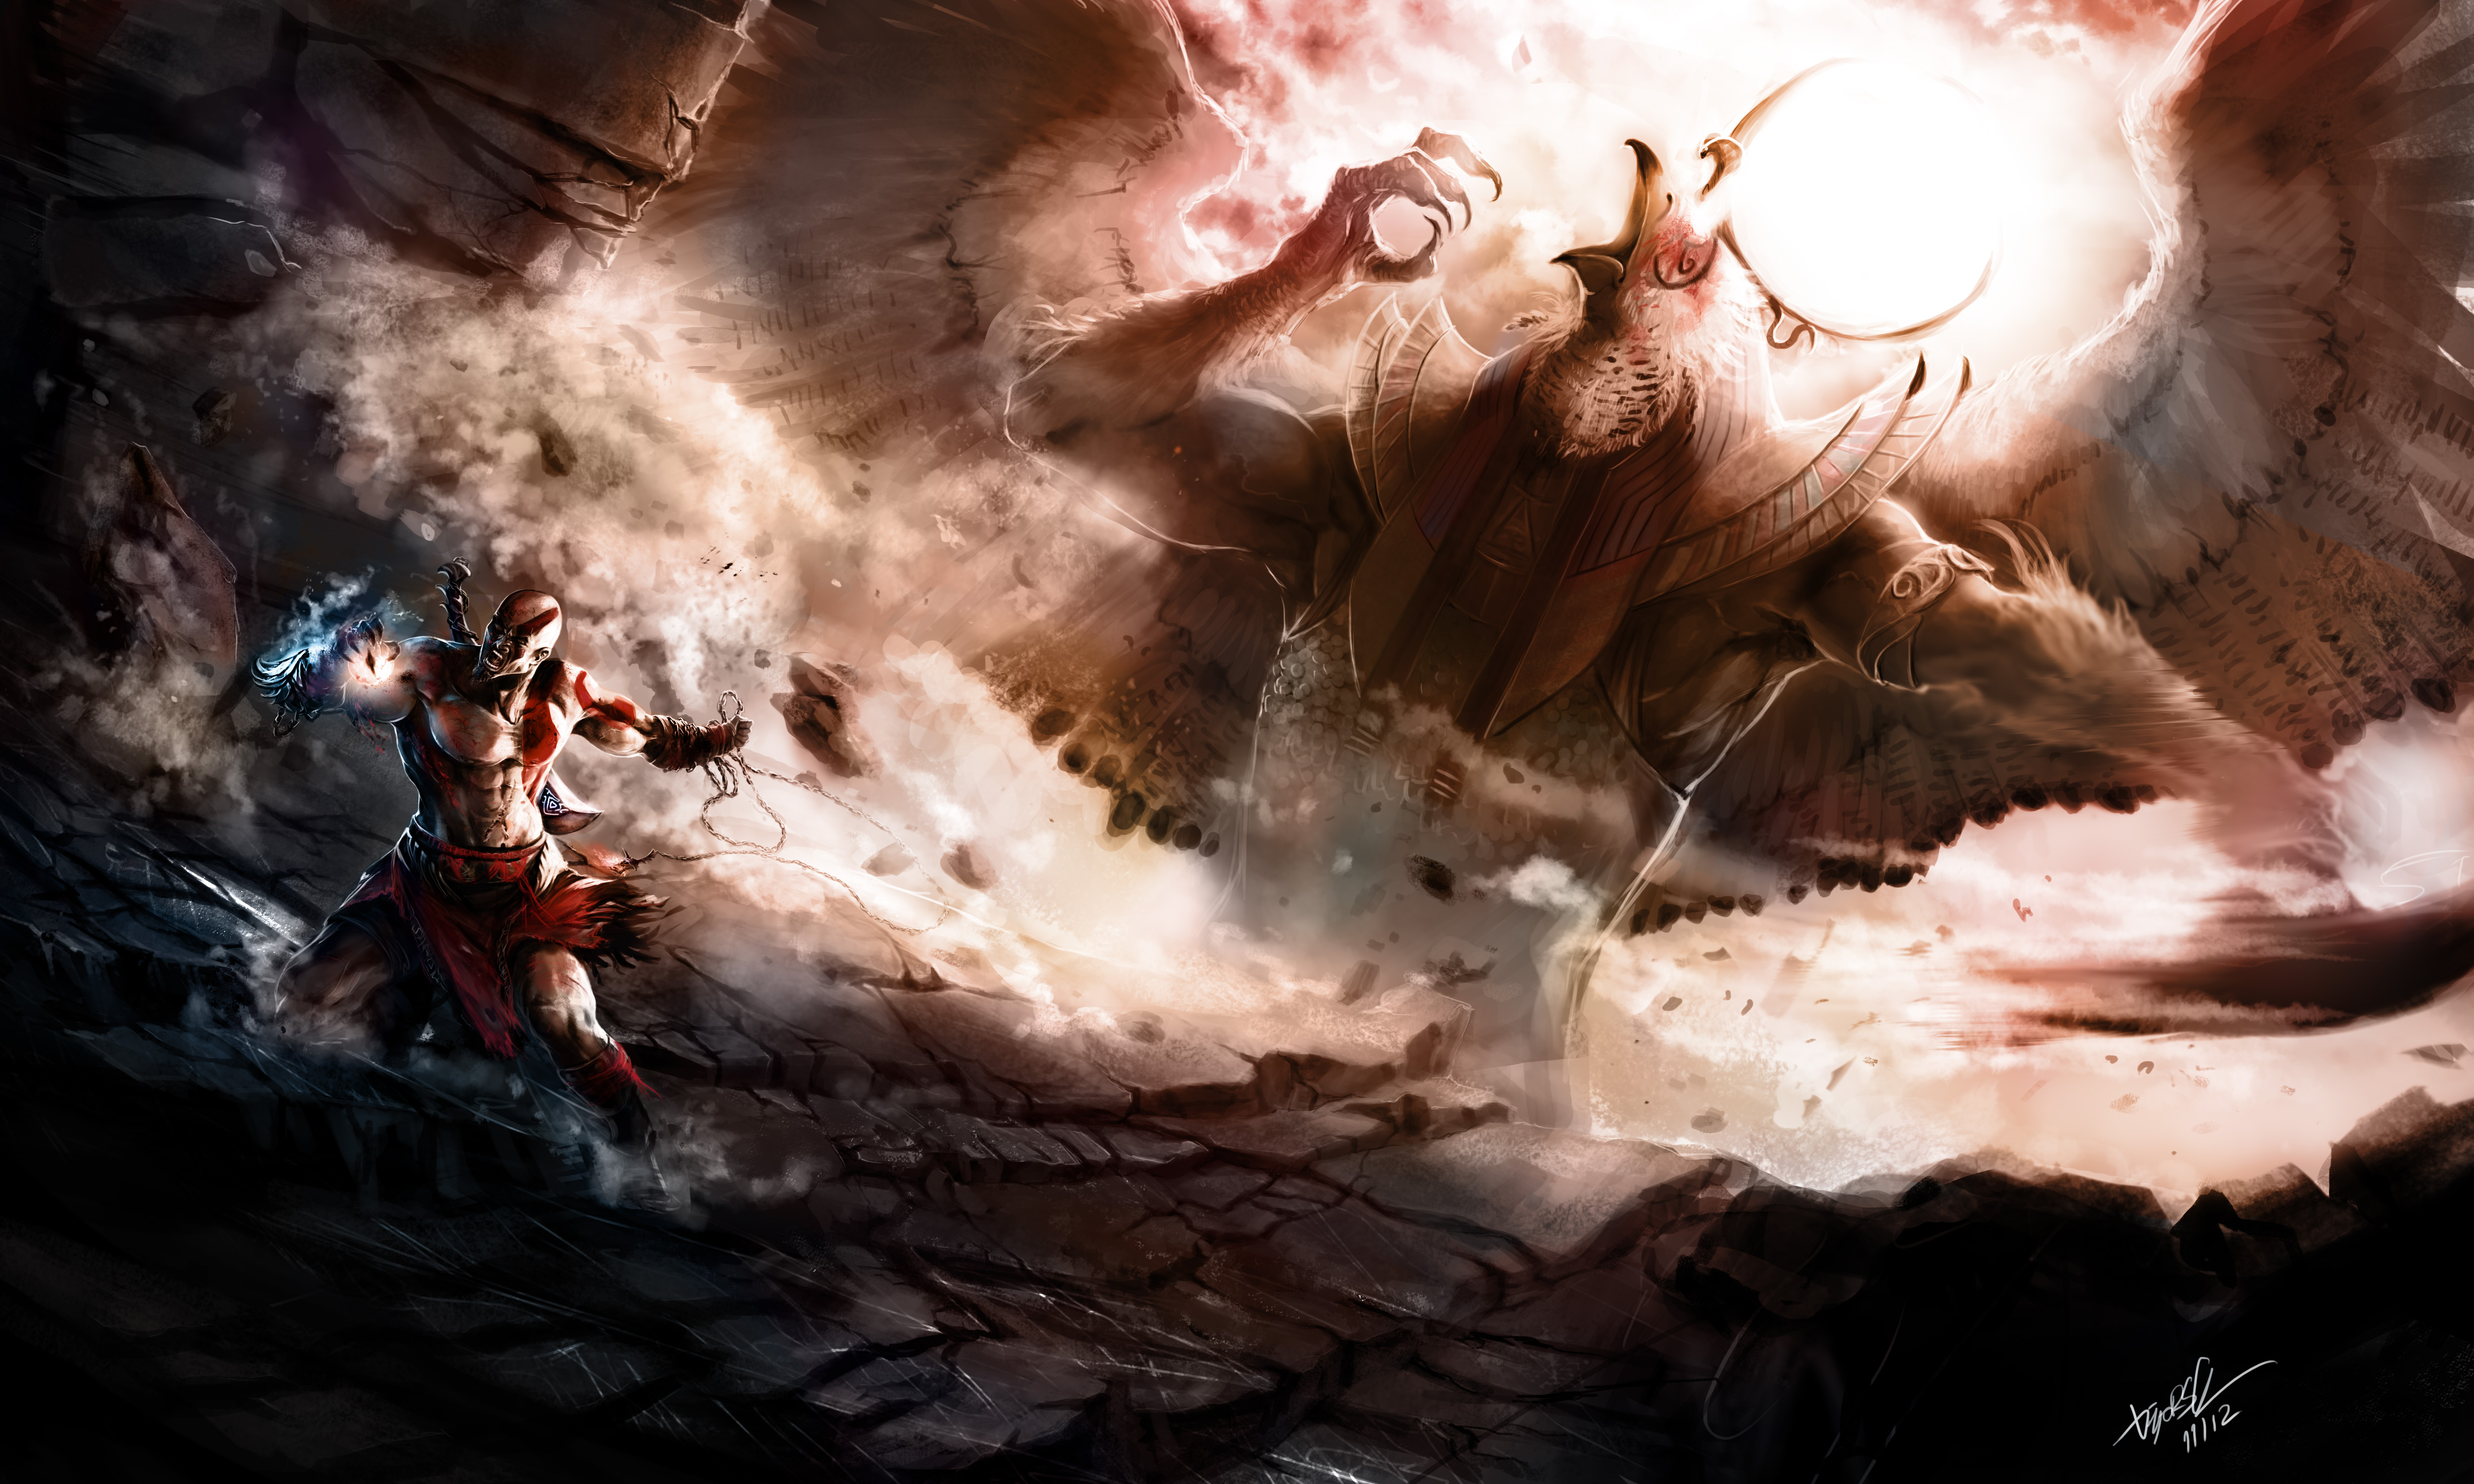 kratos_vs_ra_by_diegoocunha-d5jyaxz.jpg